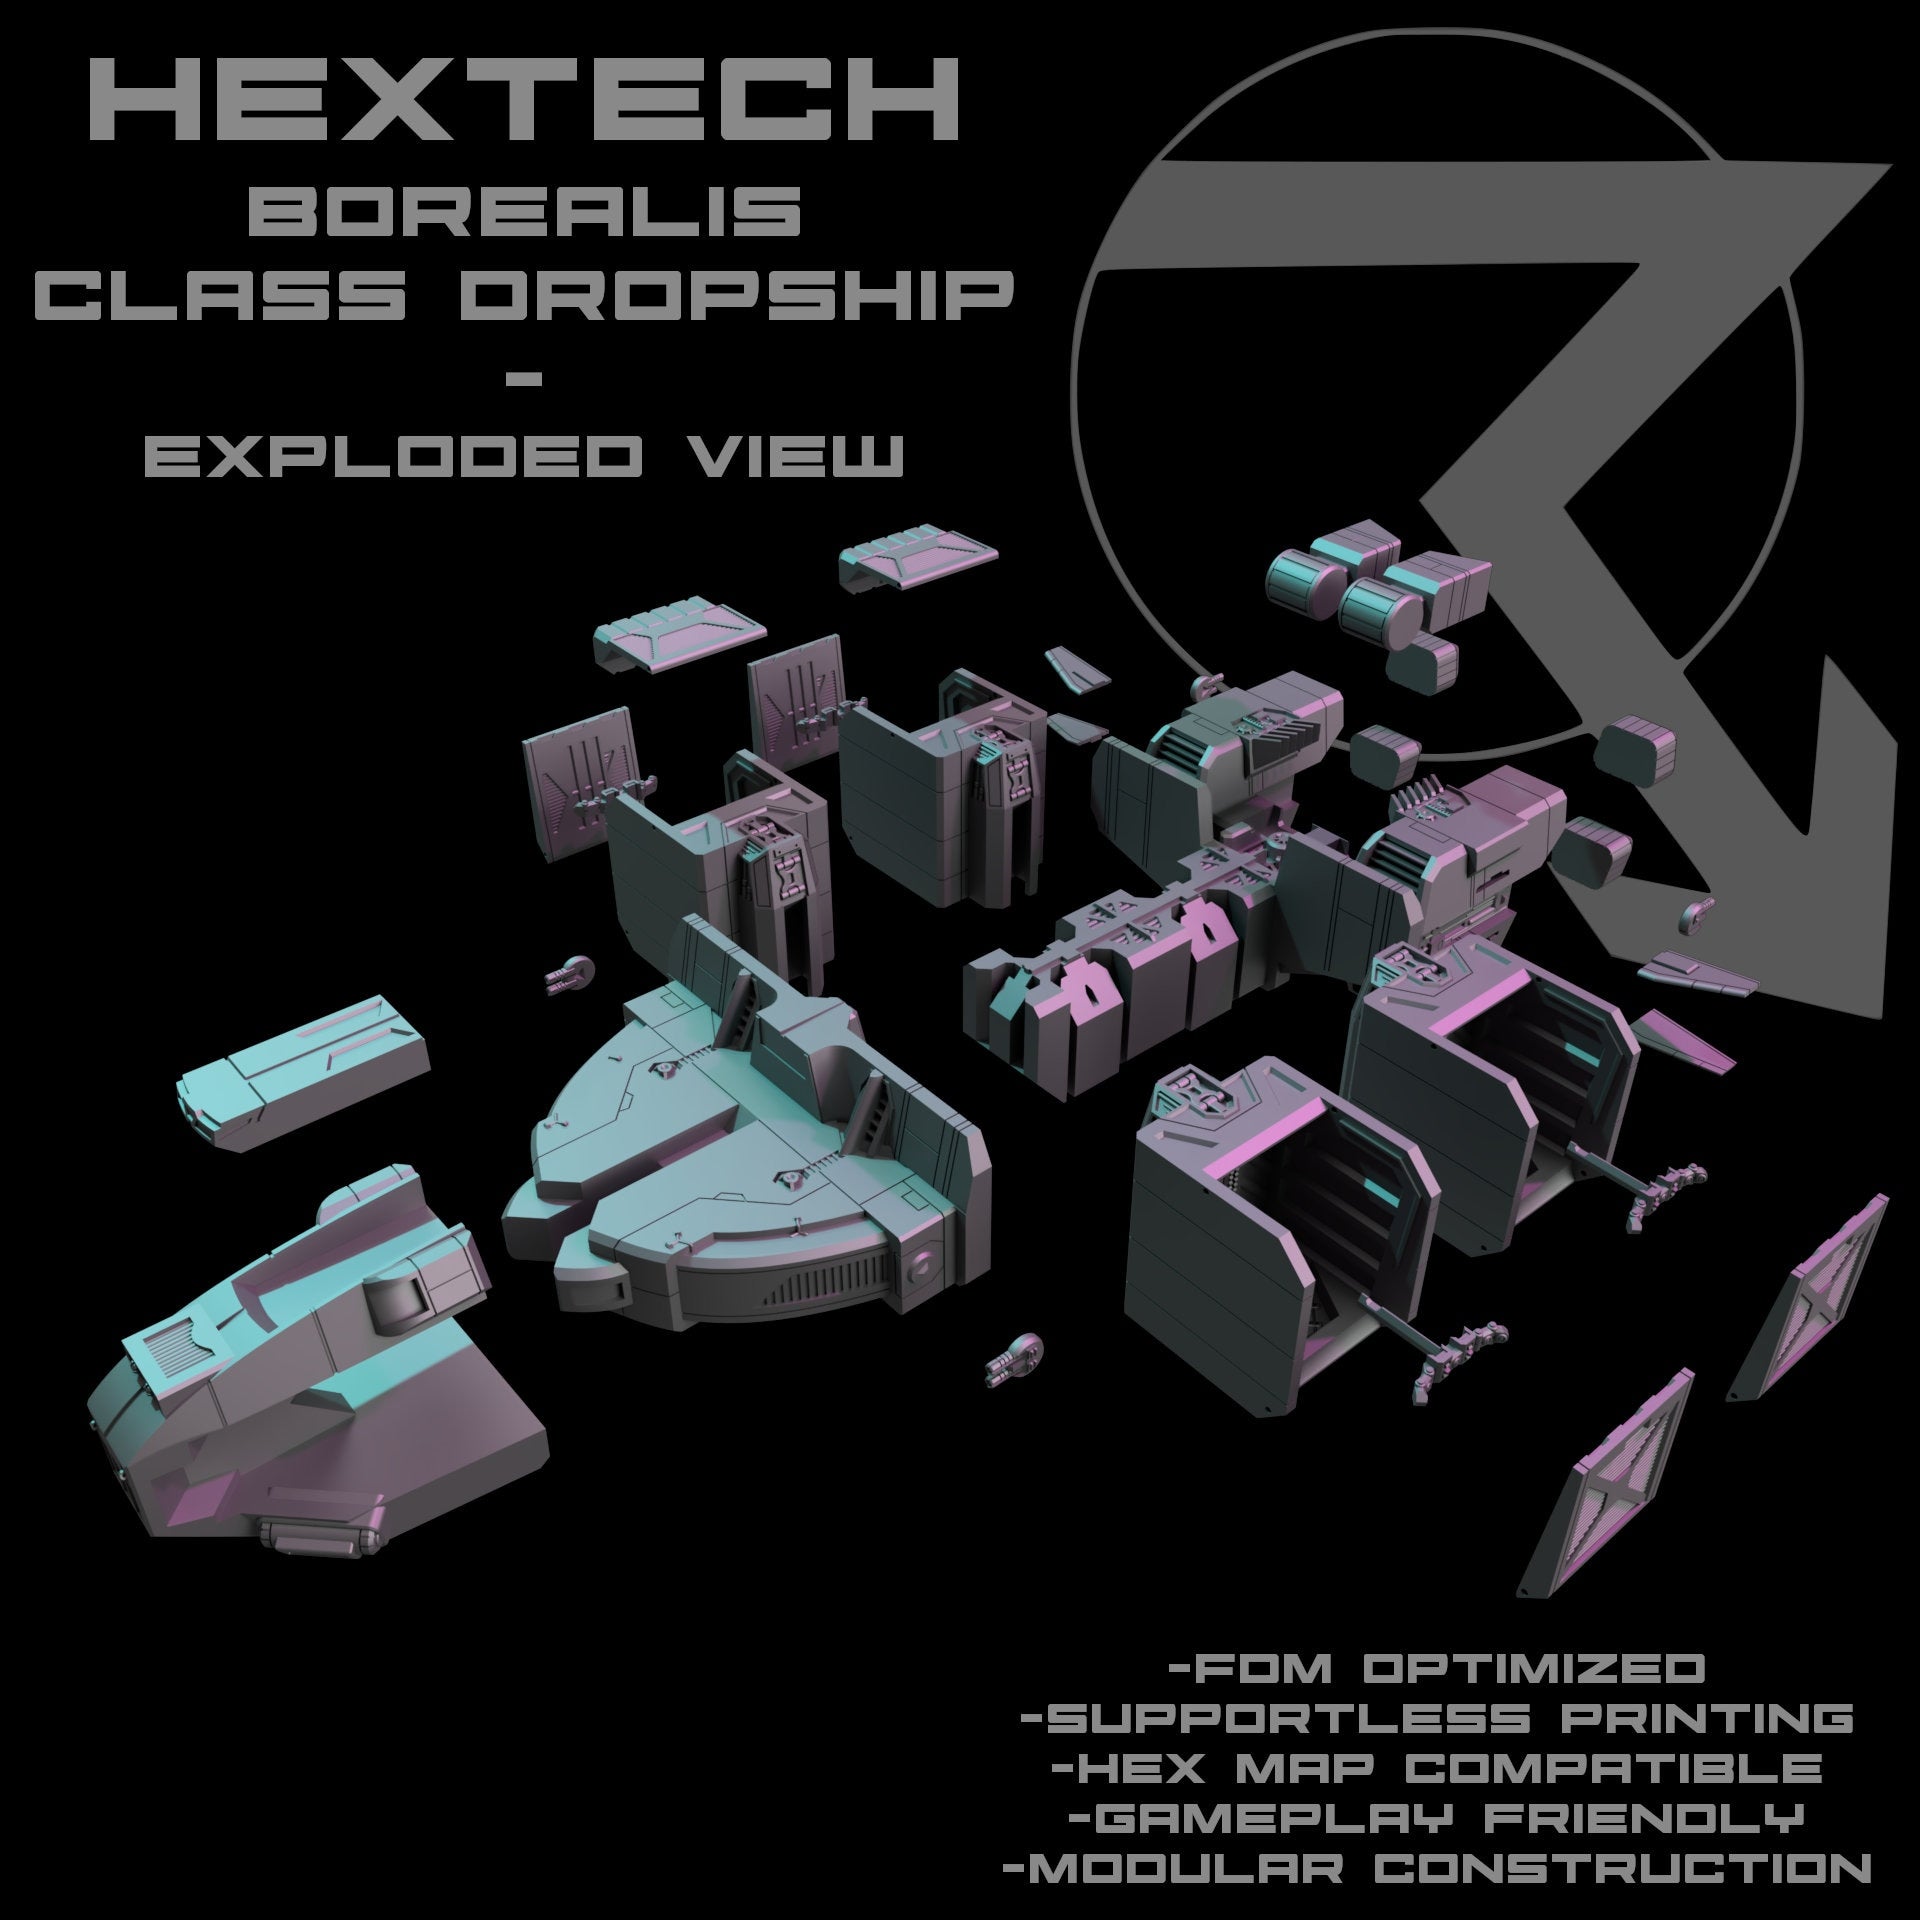 HEXTECH Borealis Cargo/Dropship for Battletech